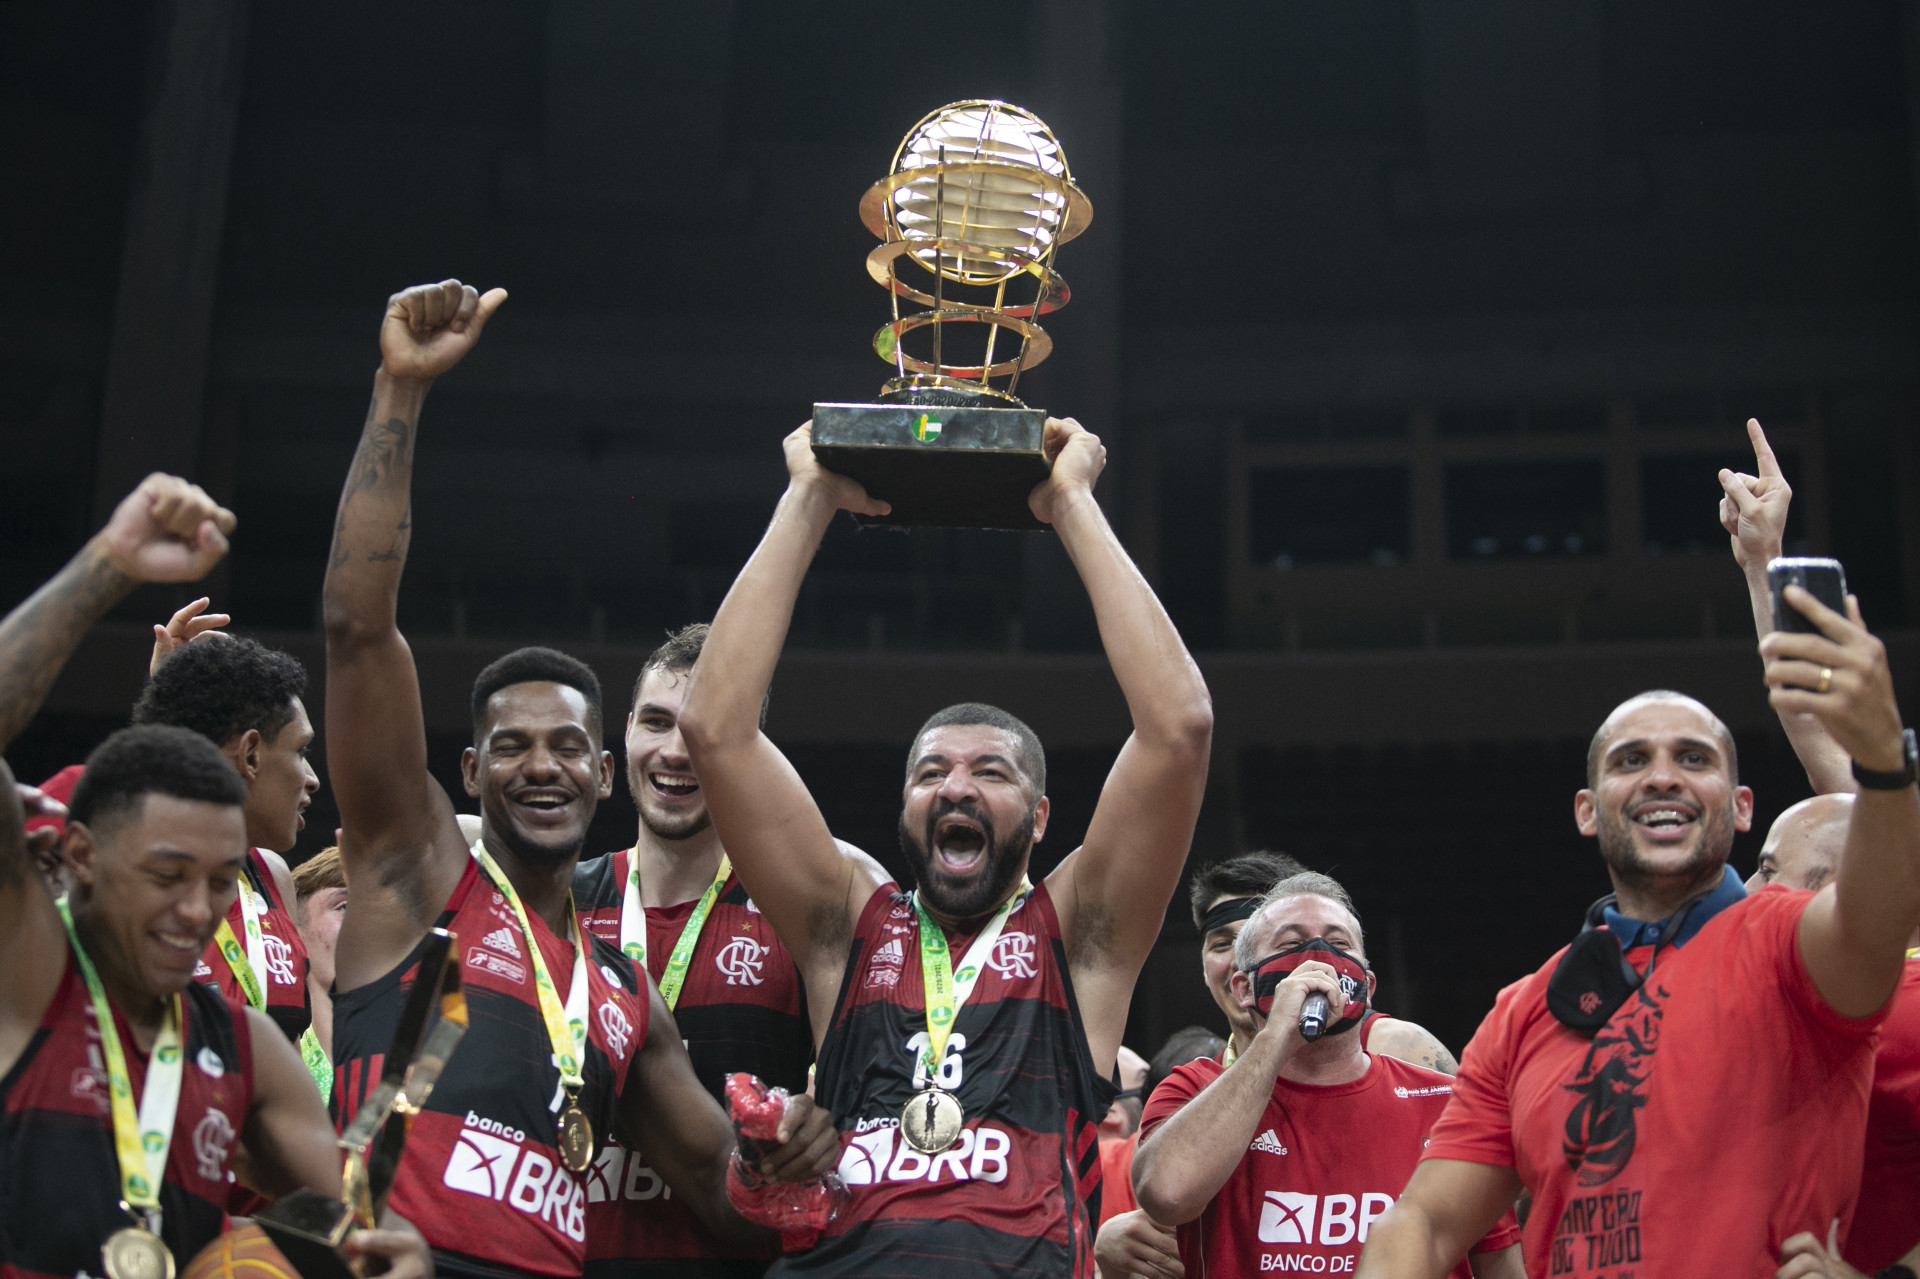 Flamengo perde para Orlando Magic em amistoso na NBA, basquete